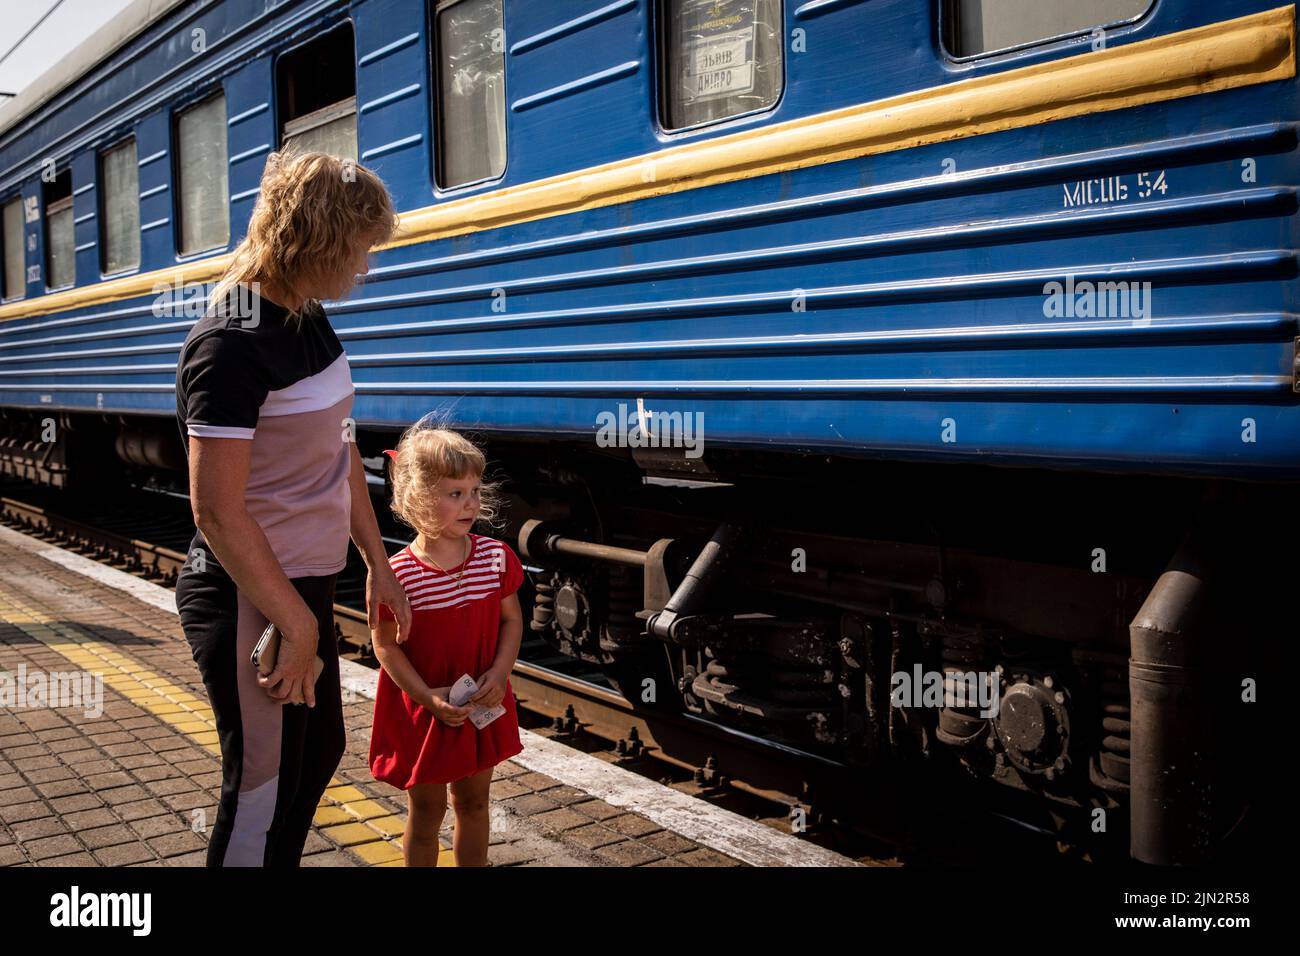 Ein kleines Mädchen weint, bevor es mit ihrer Mutter am Bahnhof Pokrovsk in den Evakuierungszug geht. Inmitten der intensivierten Kämpfe im östlichen Teil der Ukraine intensiviert die Ostukraine nun ihre zivile Evakuierung, da Millionen ukrainischer Familien aus dem immer näher rückt Krieg evakuiert wurden, da viele von ihnen in den westlichen Teil des Landes verlagert werden.Laut den Vereinten Nationen werden die meisten von ihnen in den Westen des Landes umgesiedelt. Mindestens 12 Millionen Menschen sind seit dem russischen Einmarsch in die Ukraine aus ihrer Heimat geflohen, während sieben Millionen Menschen innerhalb des Landes vertrieben werden. (Foto von Alex Chan Tsz Yuk / SOPA Images Stockfoto